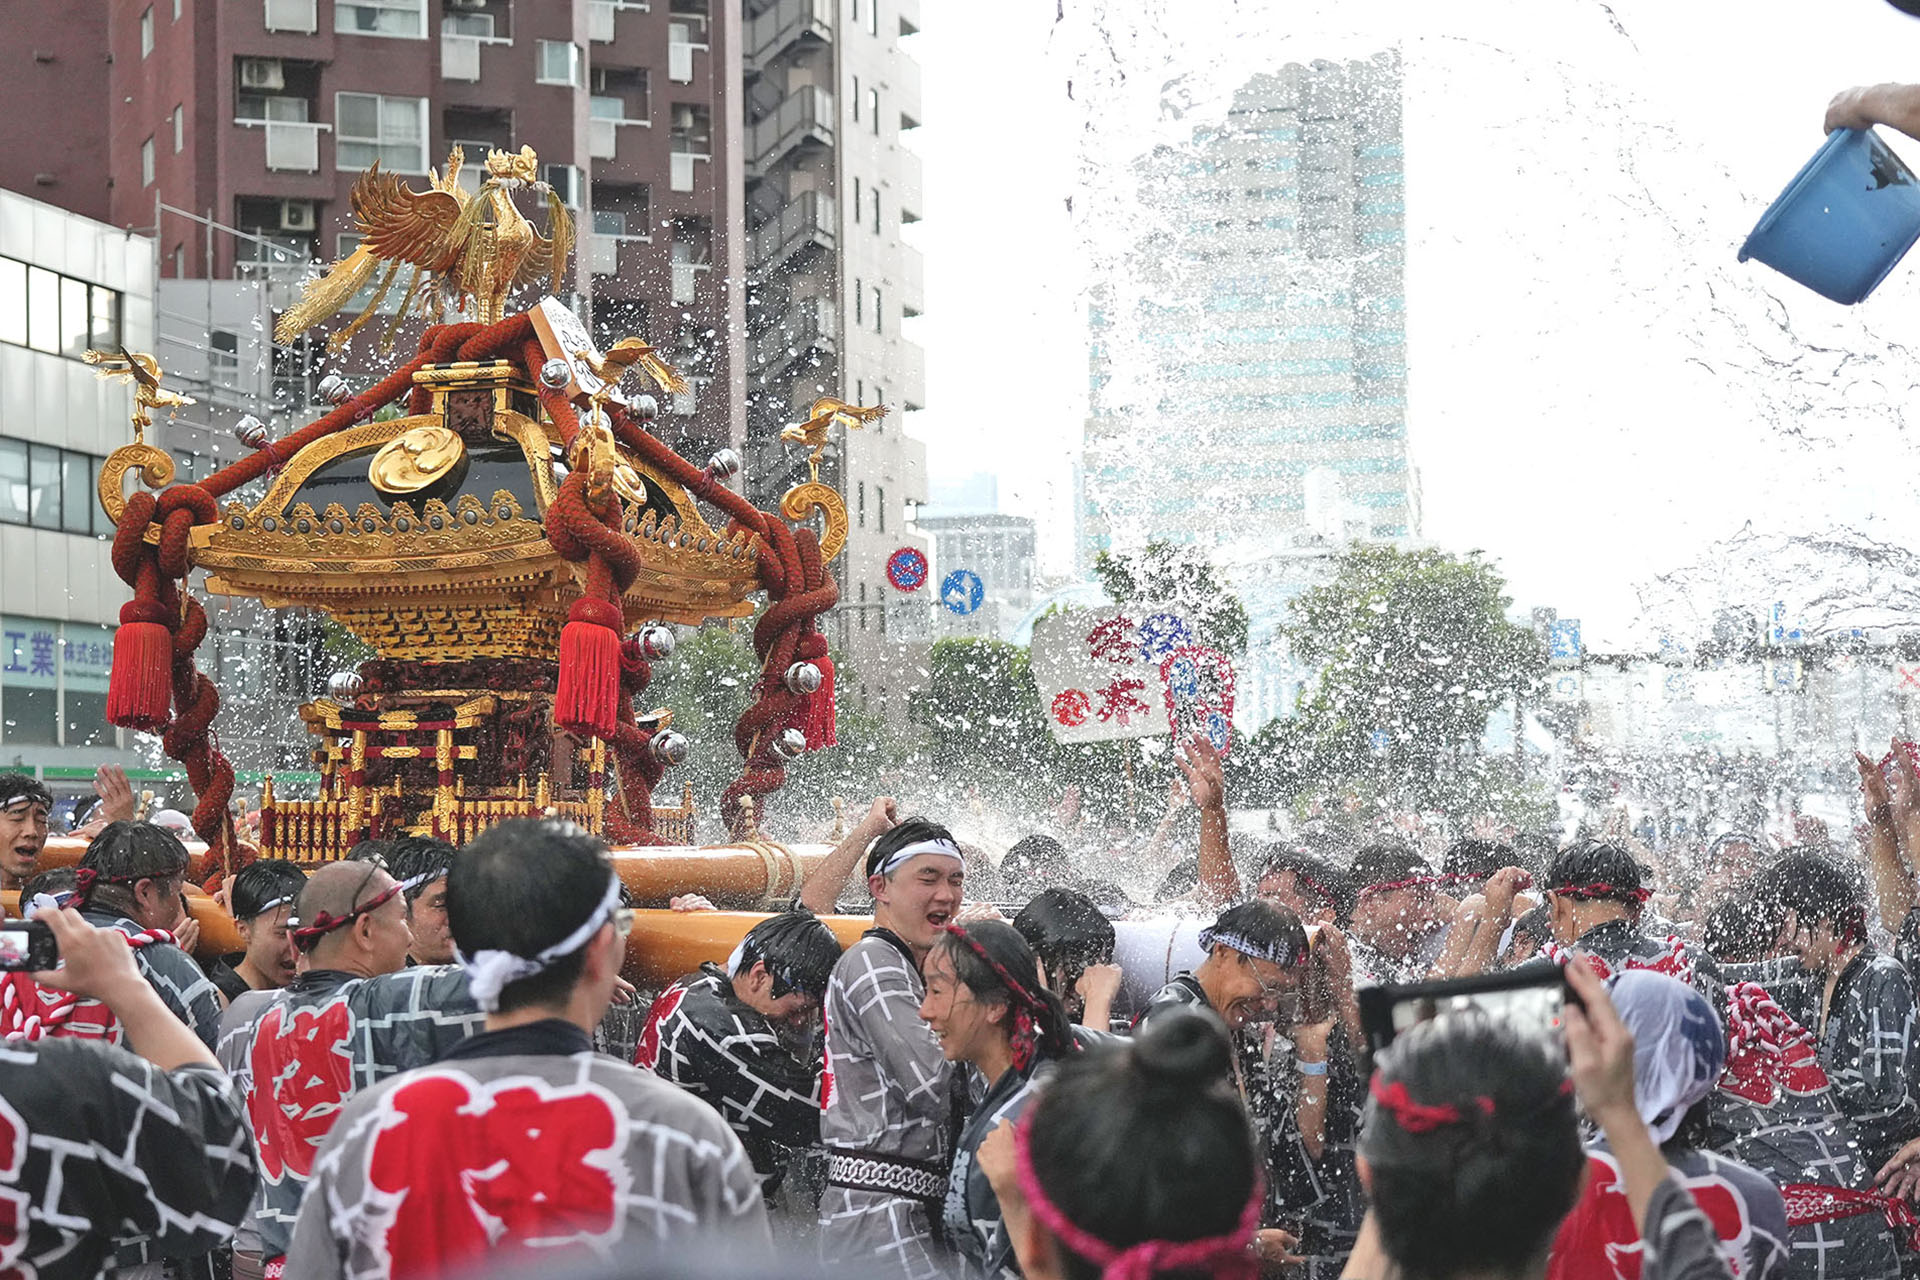 「深川八幡祭り」　水かけ祭りとして知られる東京・深川の夏祭りの風景